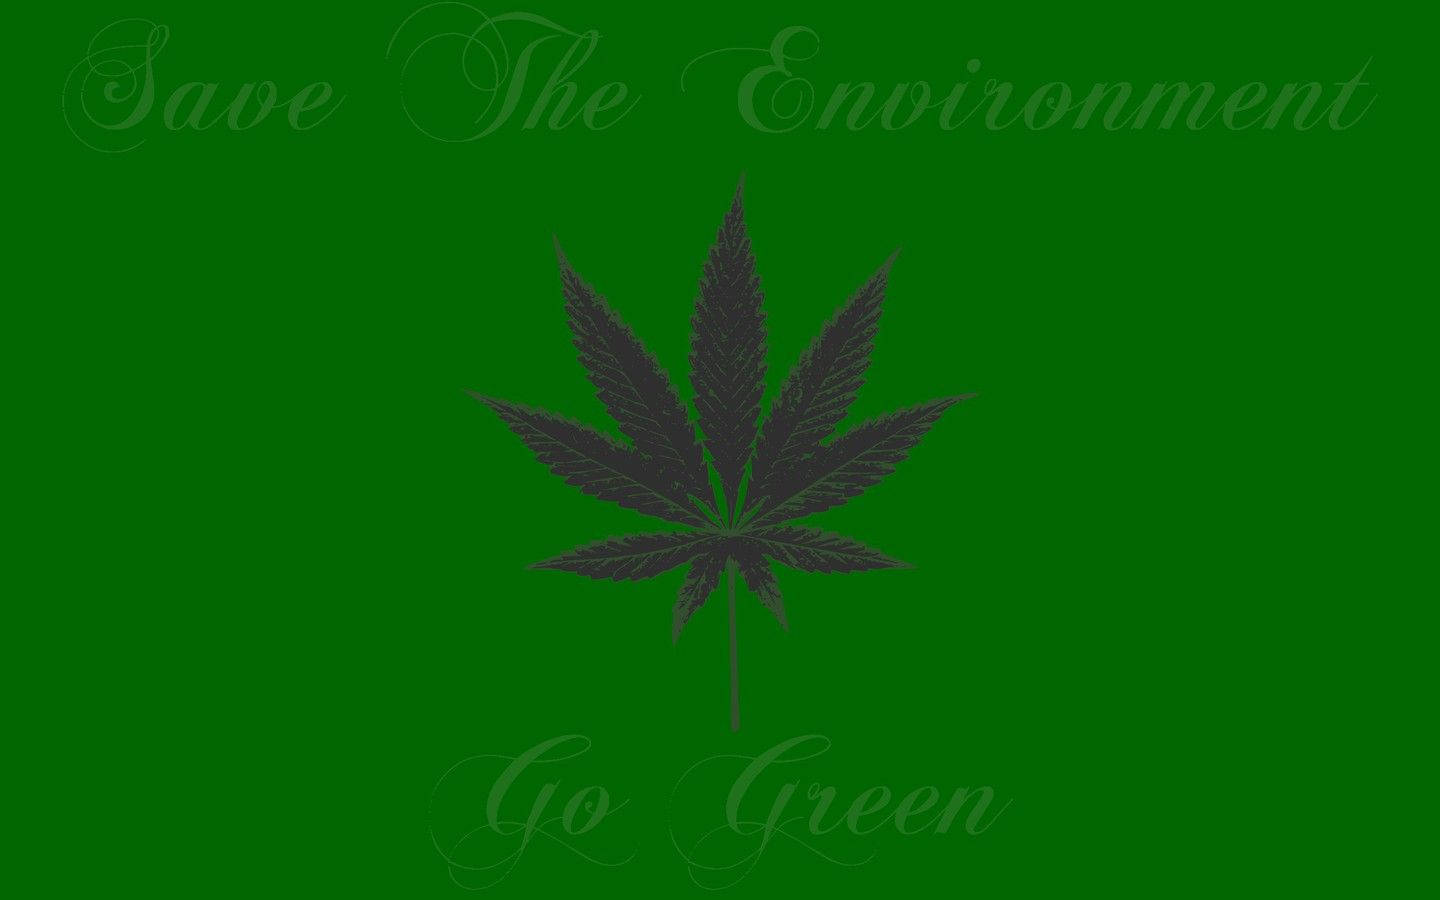 Speichernsie Das Umwelt-cannabis Wallpaper